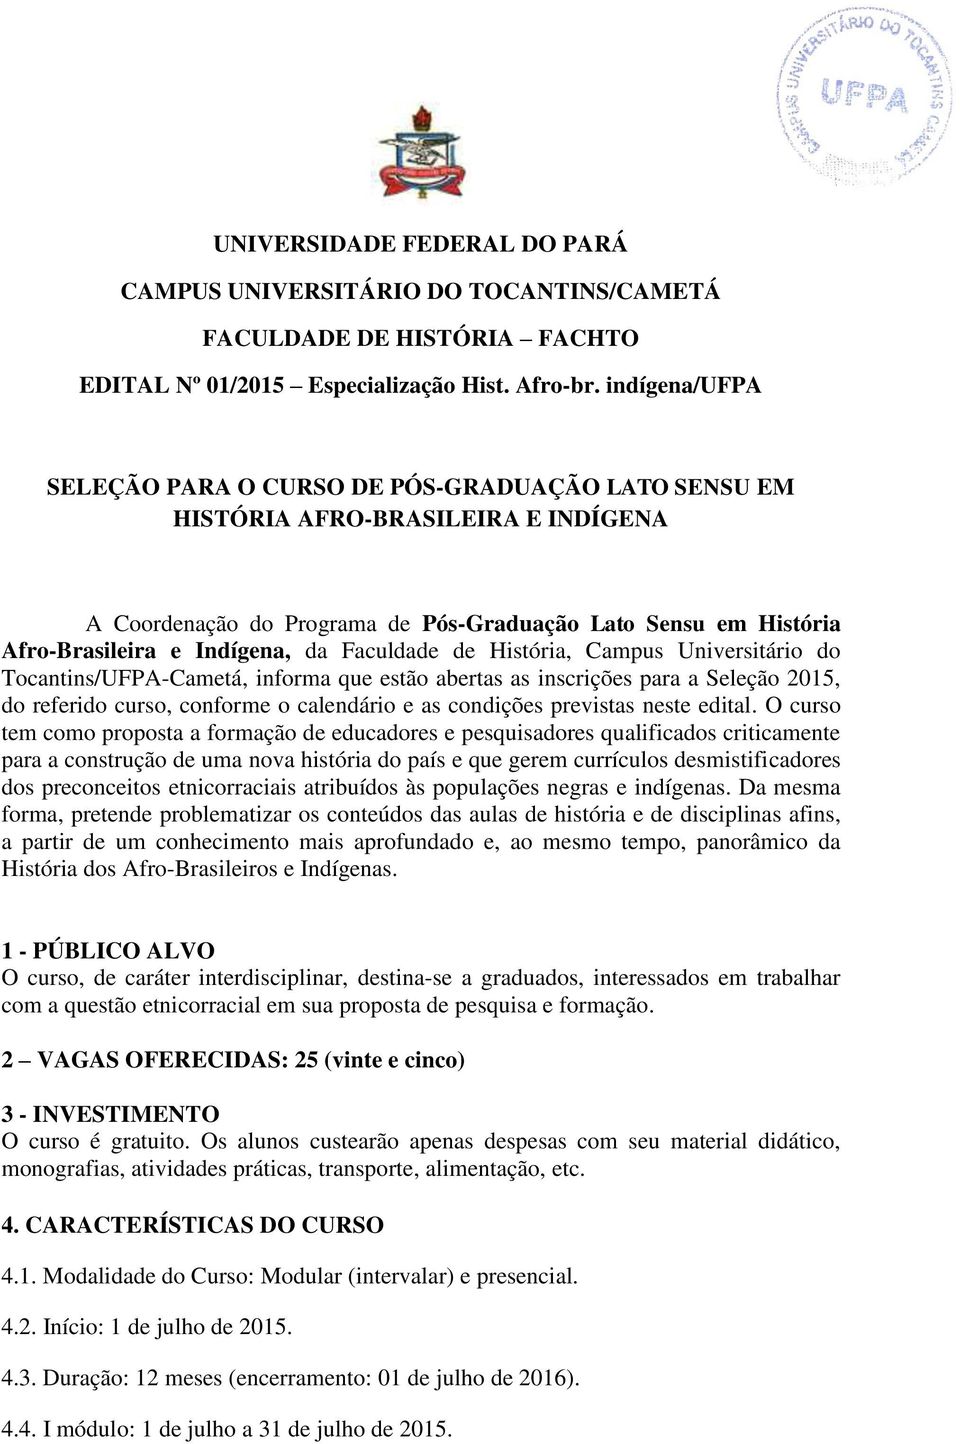 Faculdade de História, Campus Universitário do Tocantins/UFPA-Cametá, informa que estão abertas as inscrições para a Seleção 2015, do referido curso, conforme o calendário e as condições previstas